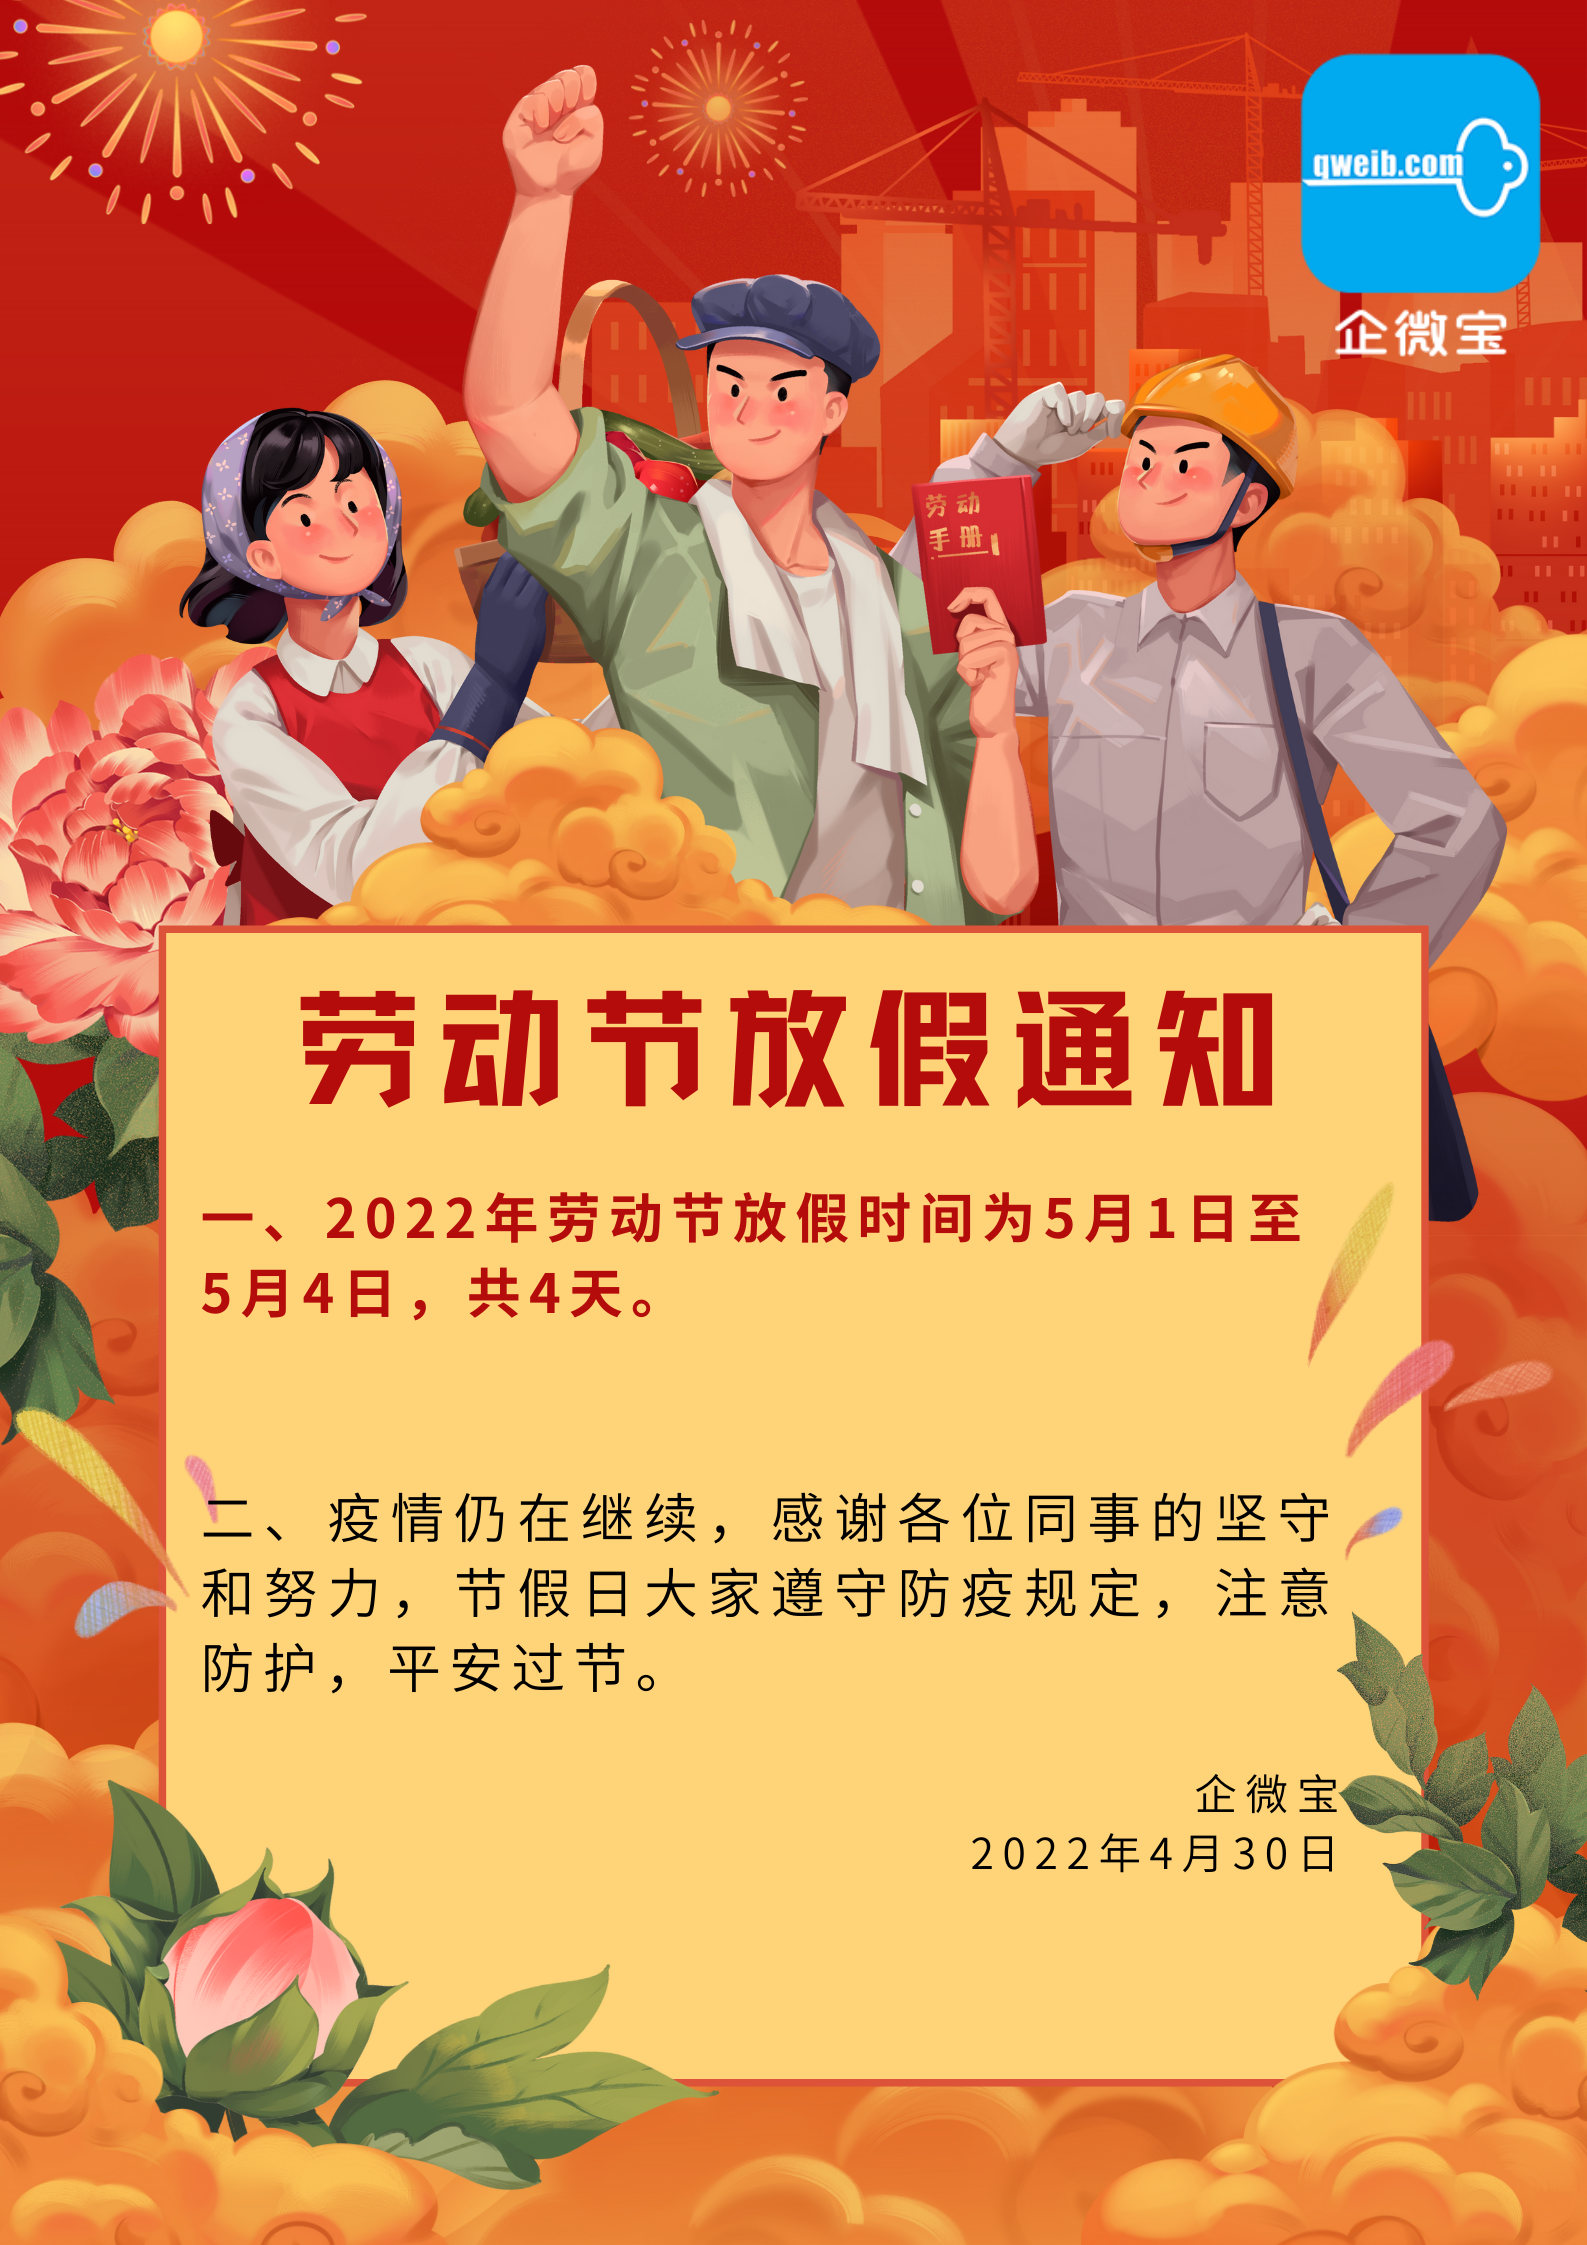 橙红色复古人物插画复古劳动节节日宣传中文海报(1)